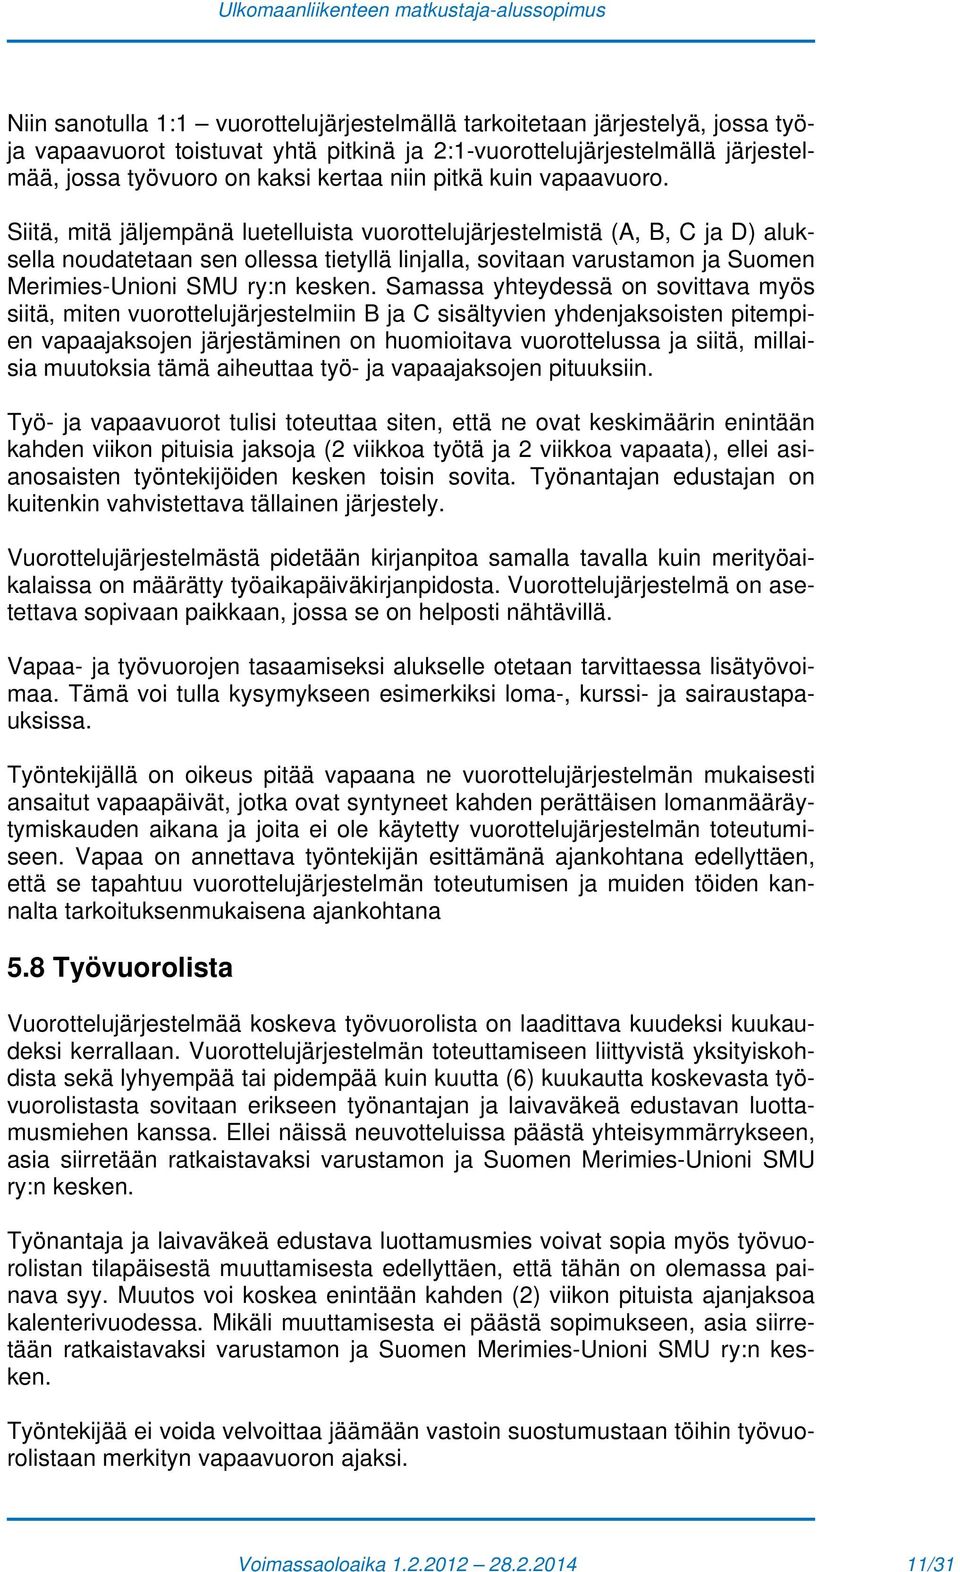 Siitä, mitä jäljempänä luetelluista vuorottelujärjestelmistä (A, B, C ja D) aluksella noudatetaan sen ollessa tietyllä linjalla, sovitaan varustamon ja Suomen Merimies-Unioni SMU ry:n kesken.